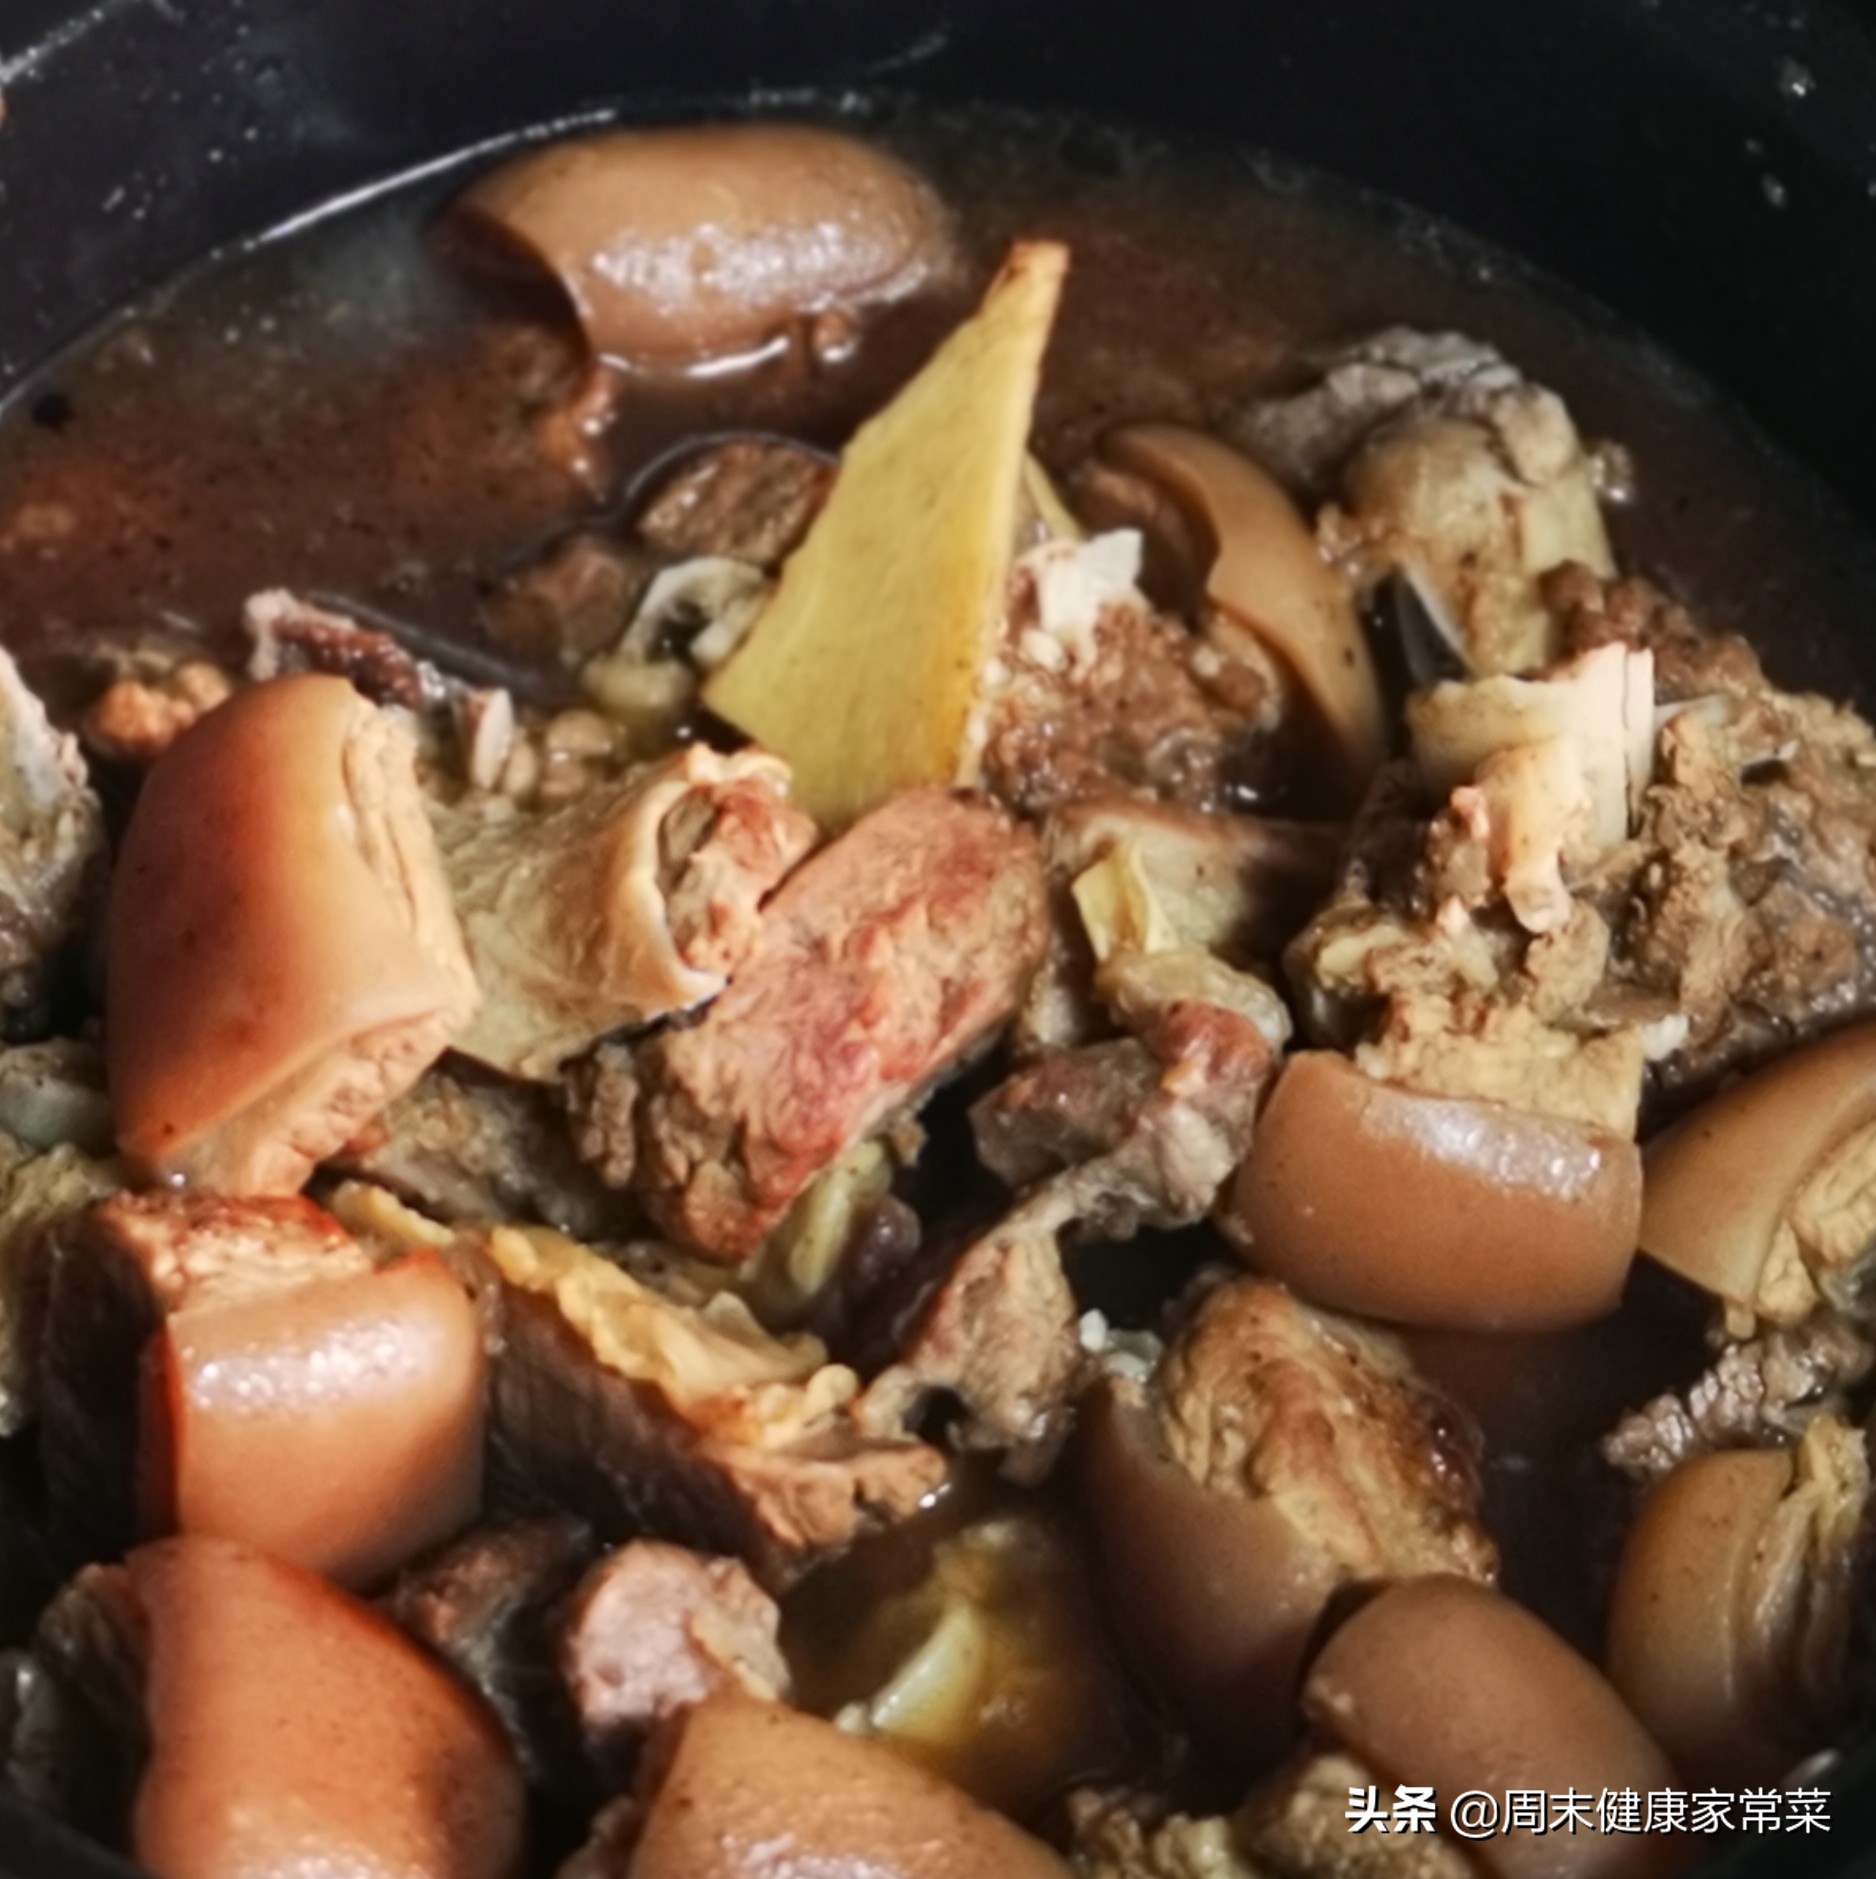 只要有肉，广东人就能将其变成“煲”,来看看一锅驴肉煲的诱惑